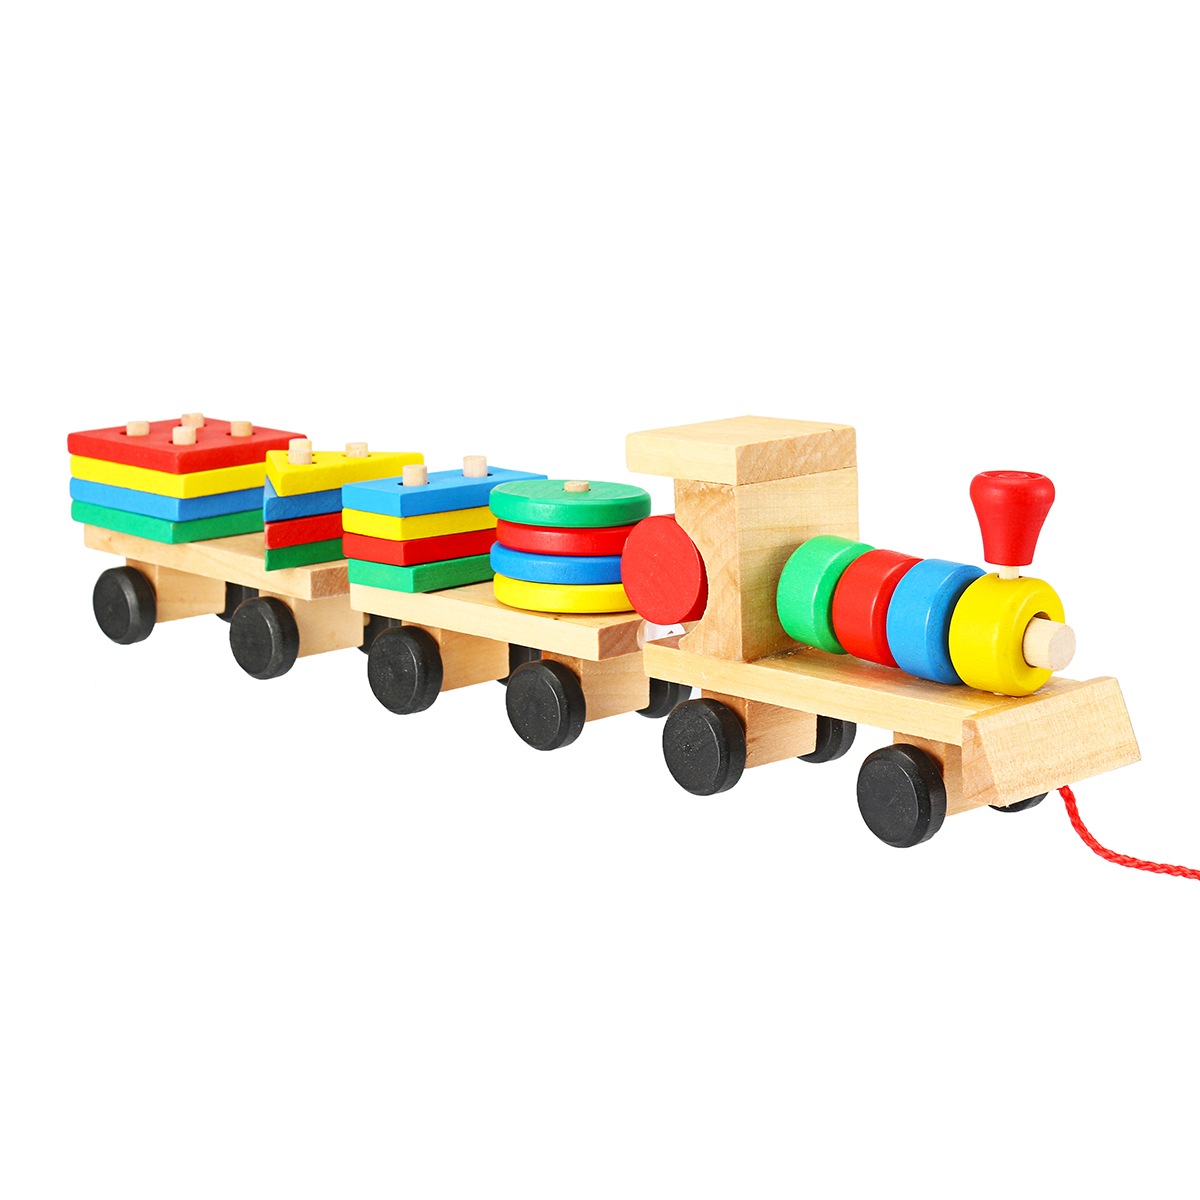 

Train Truck Деревянные игрушки с геометрическими блоками Детские развивающие игрушки для детей